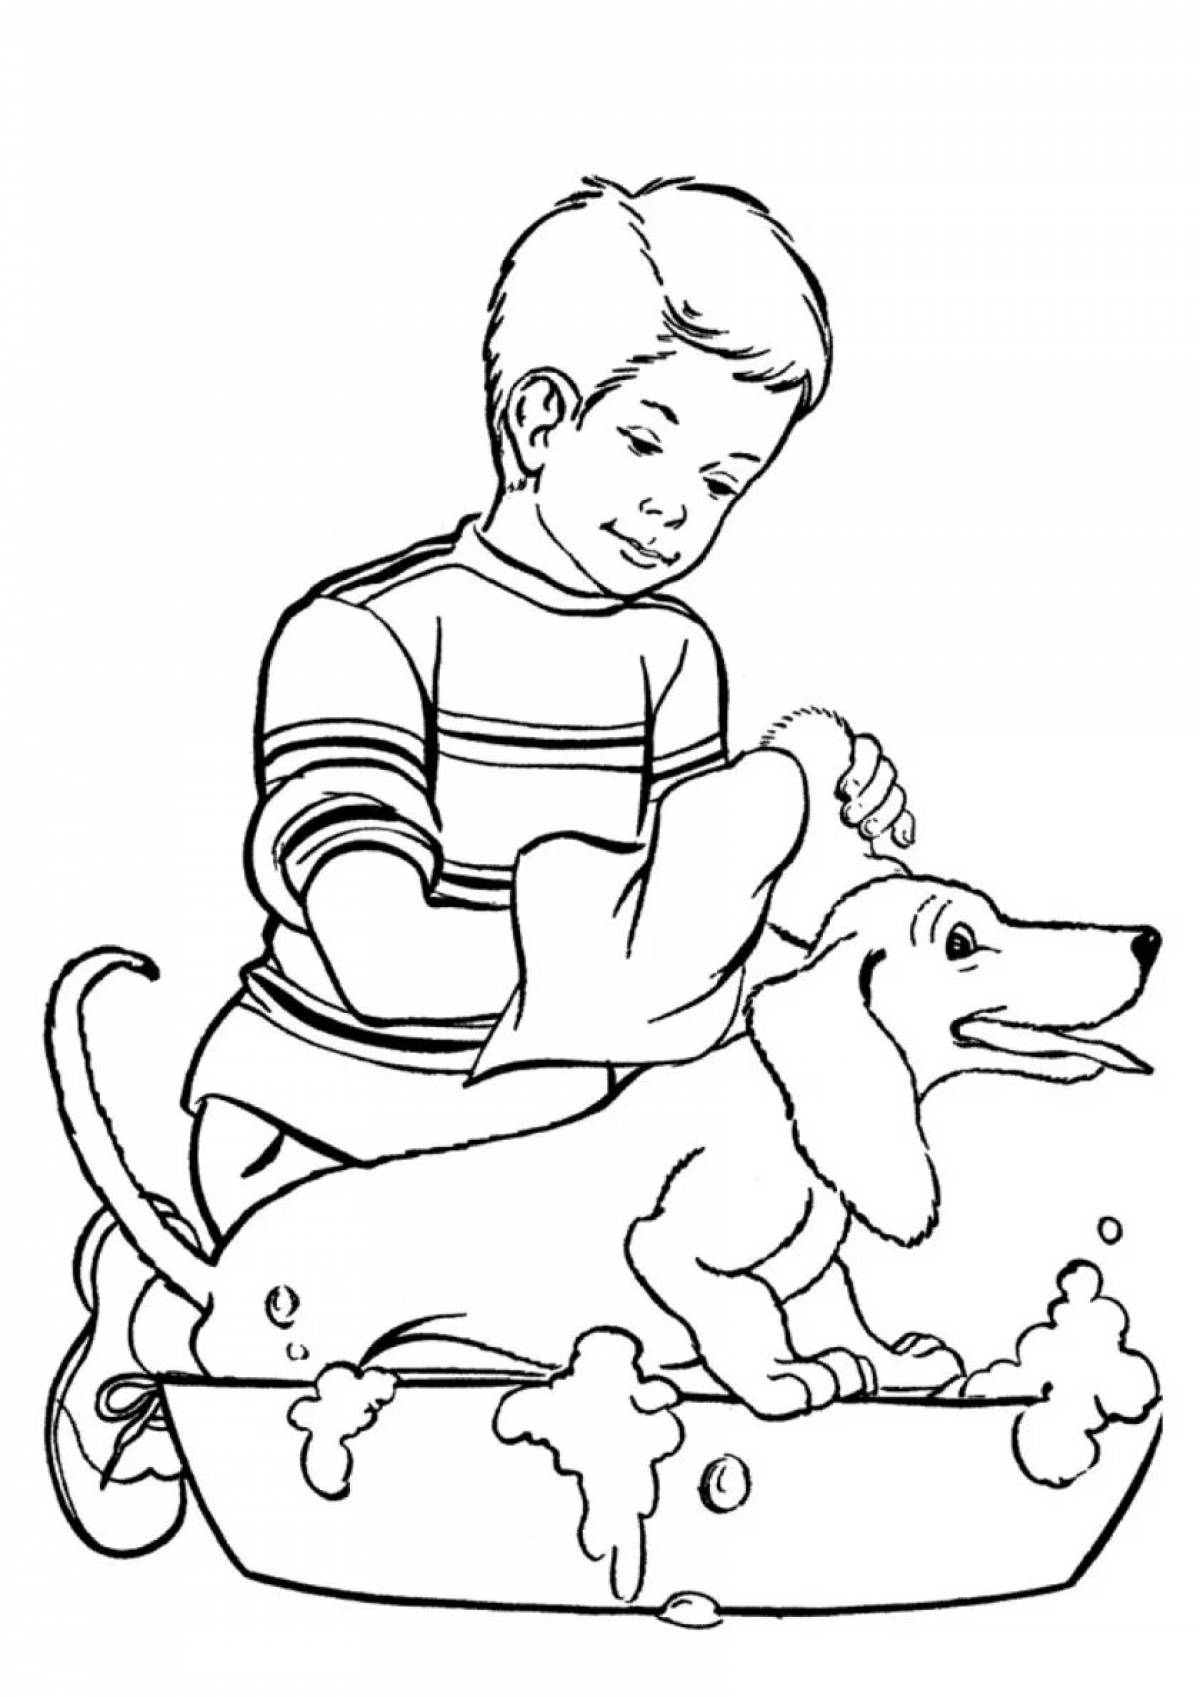 Юмористическая раскраска для собак-мальчиков